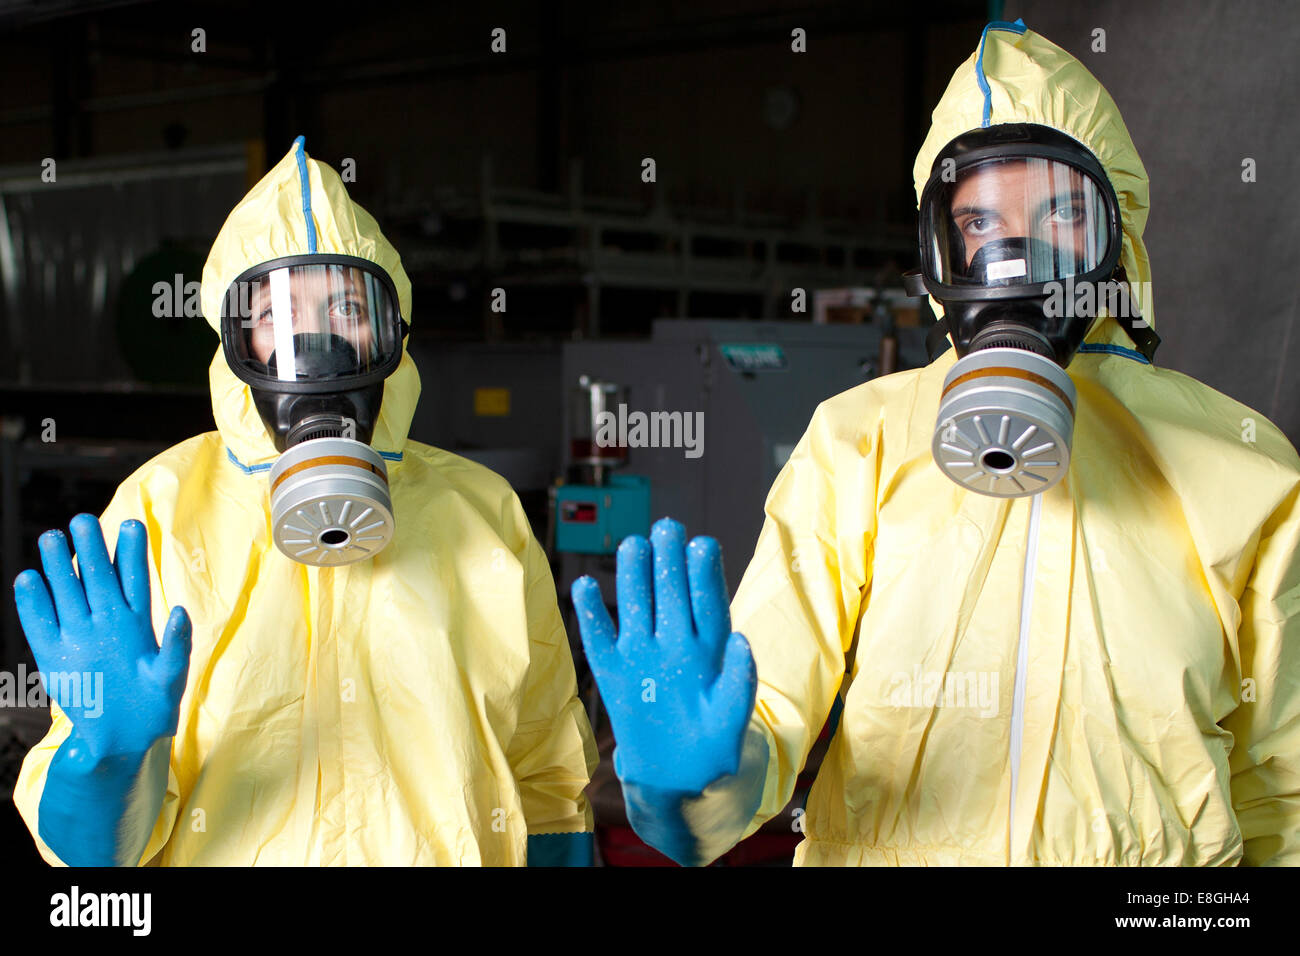 Allarme di Ebola - aiuto di due lavoratori vietano l'accesso in dpi (dispositivi di protezione individuale) Foto Stock